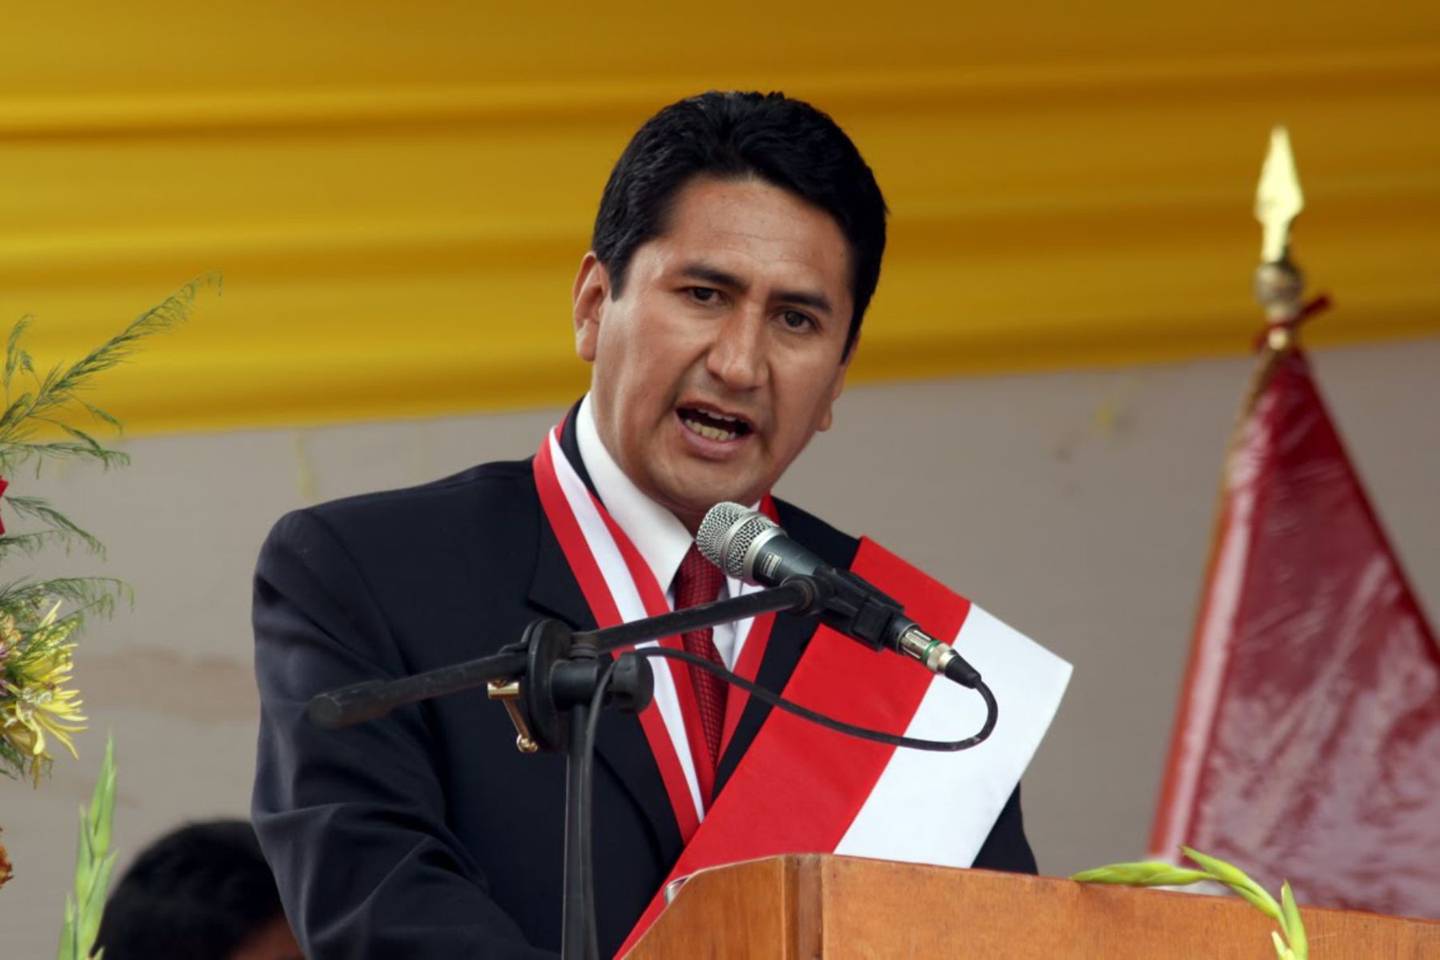 El exgobernador es líder del partido Perú Libre.dfd